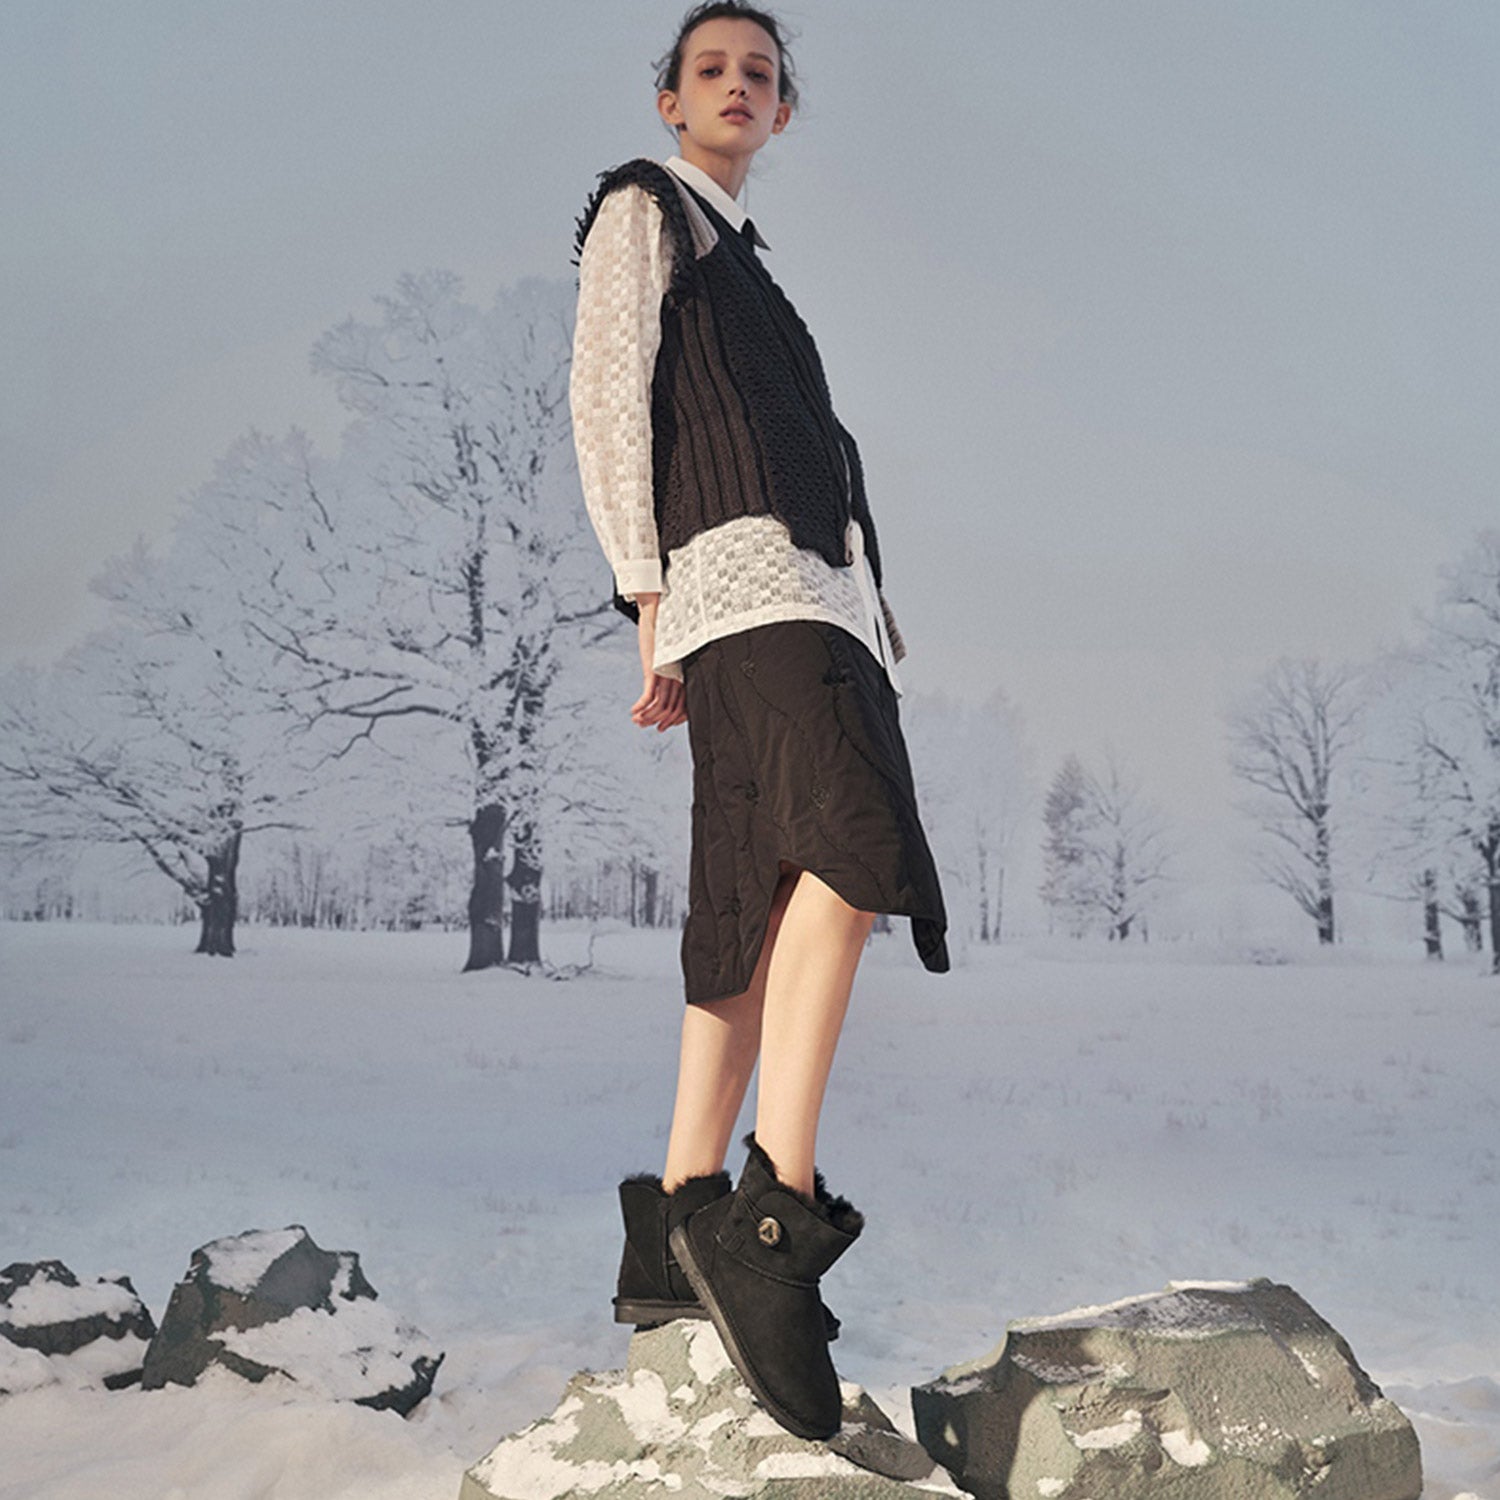 Australian Model Wearing UGG Boots in Snow